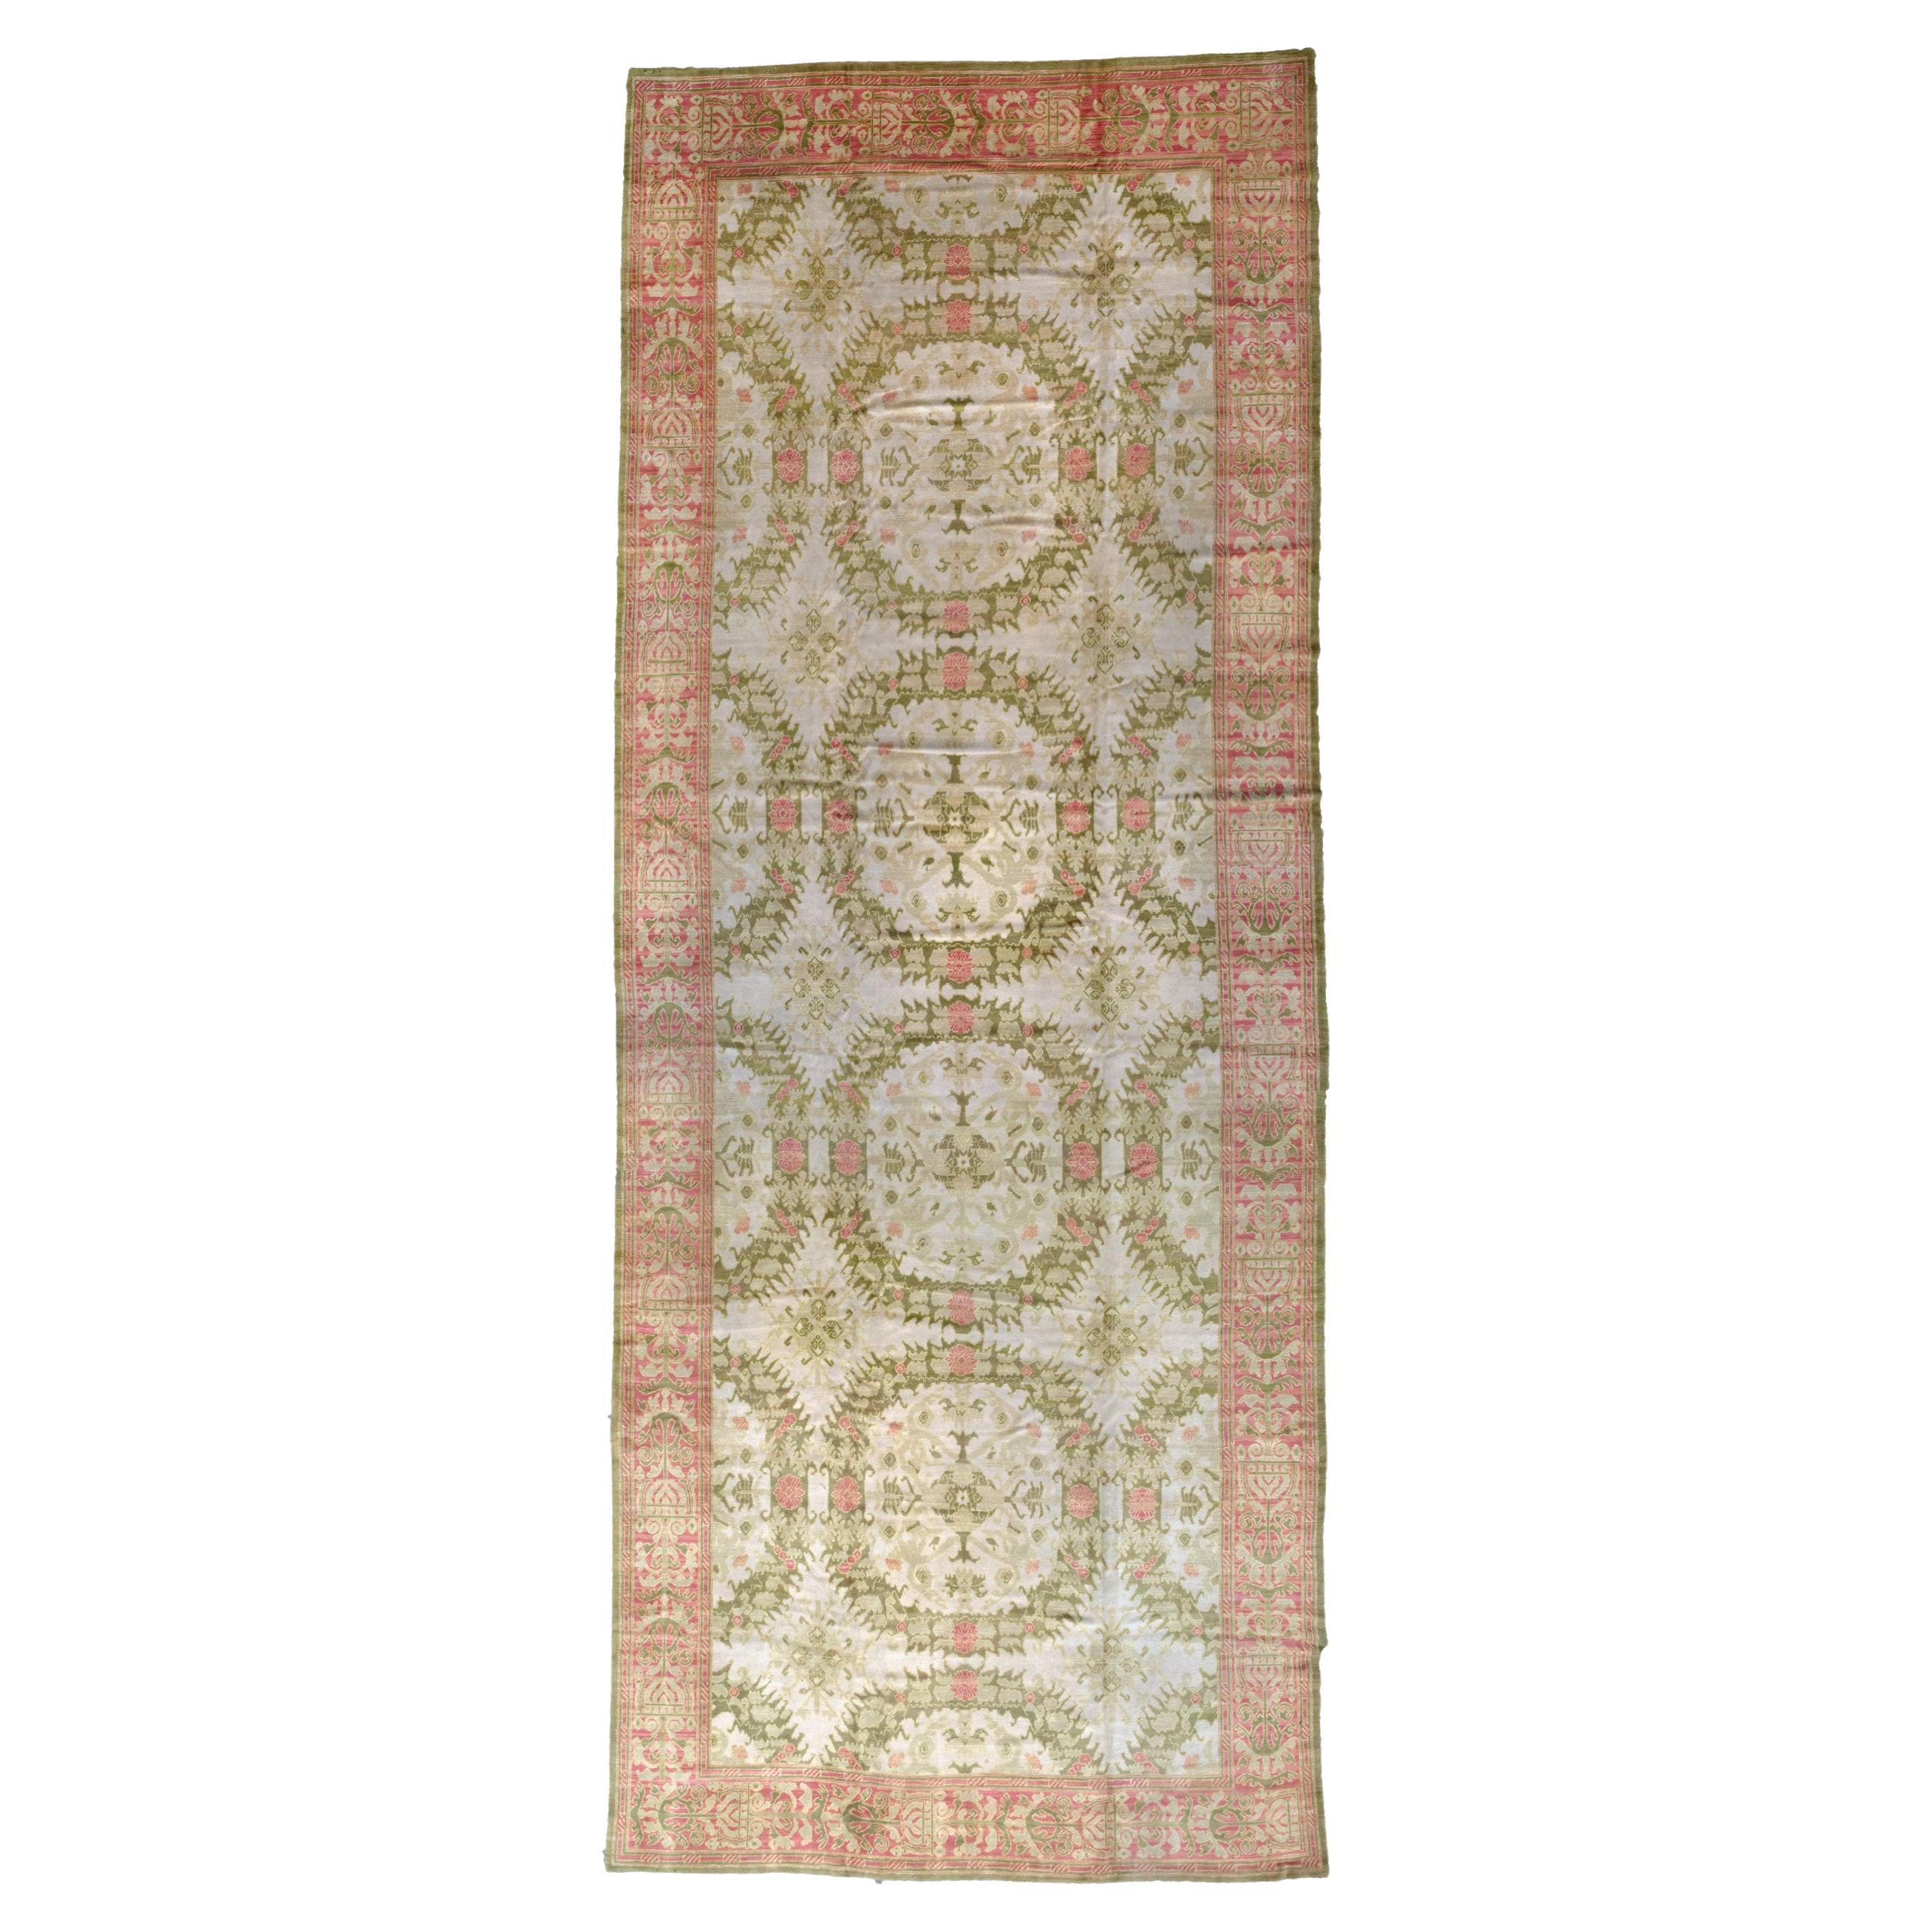 Antique Spanish Carpet For Sale